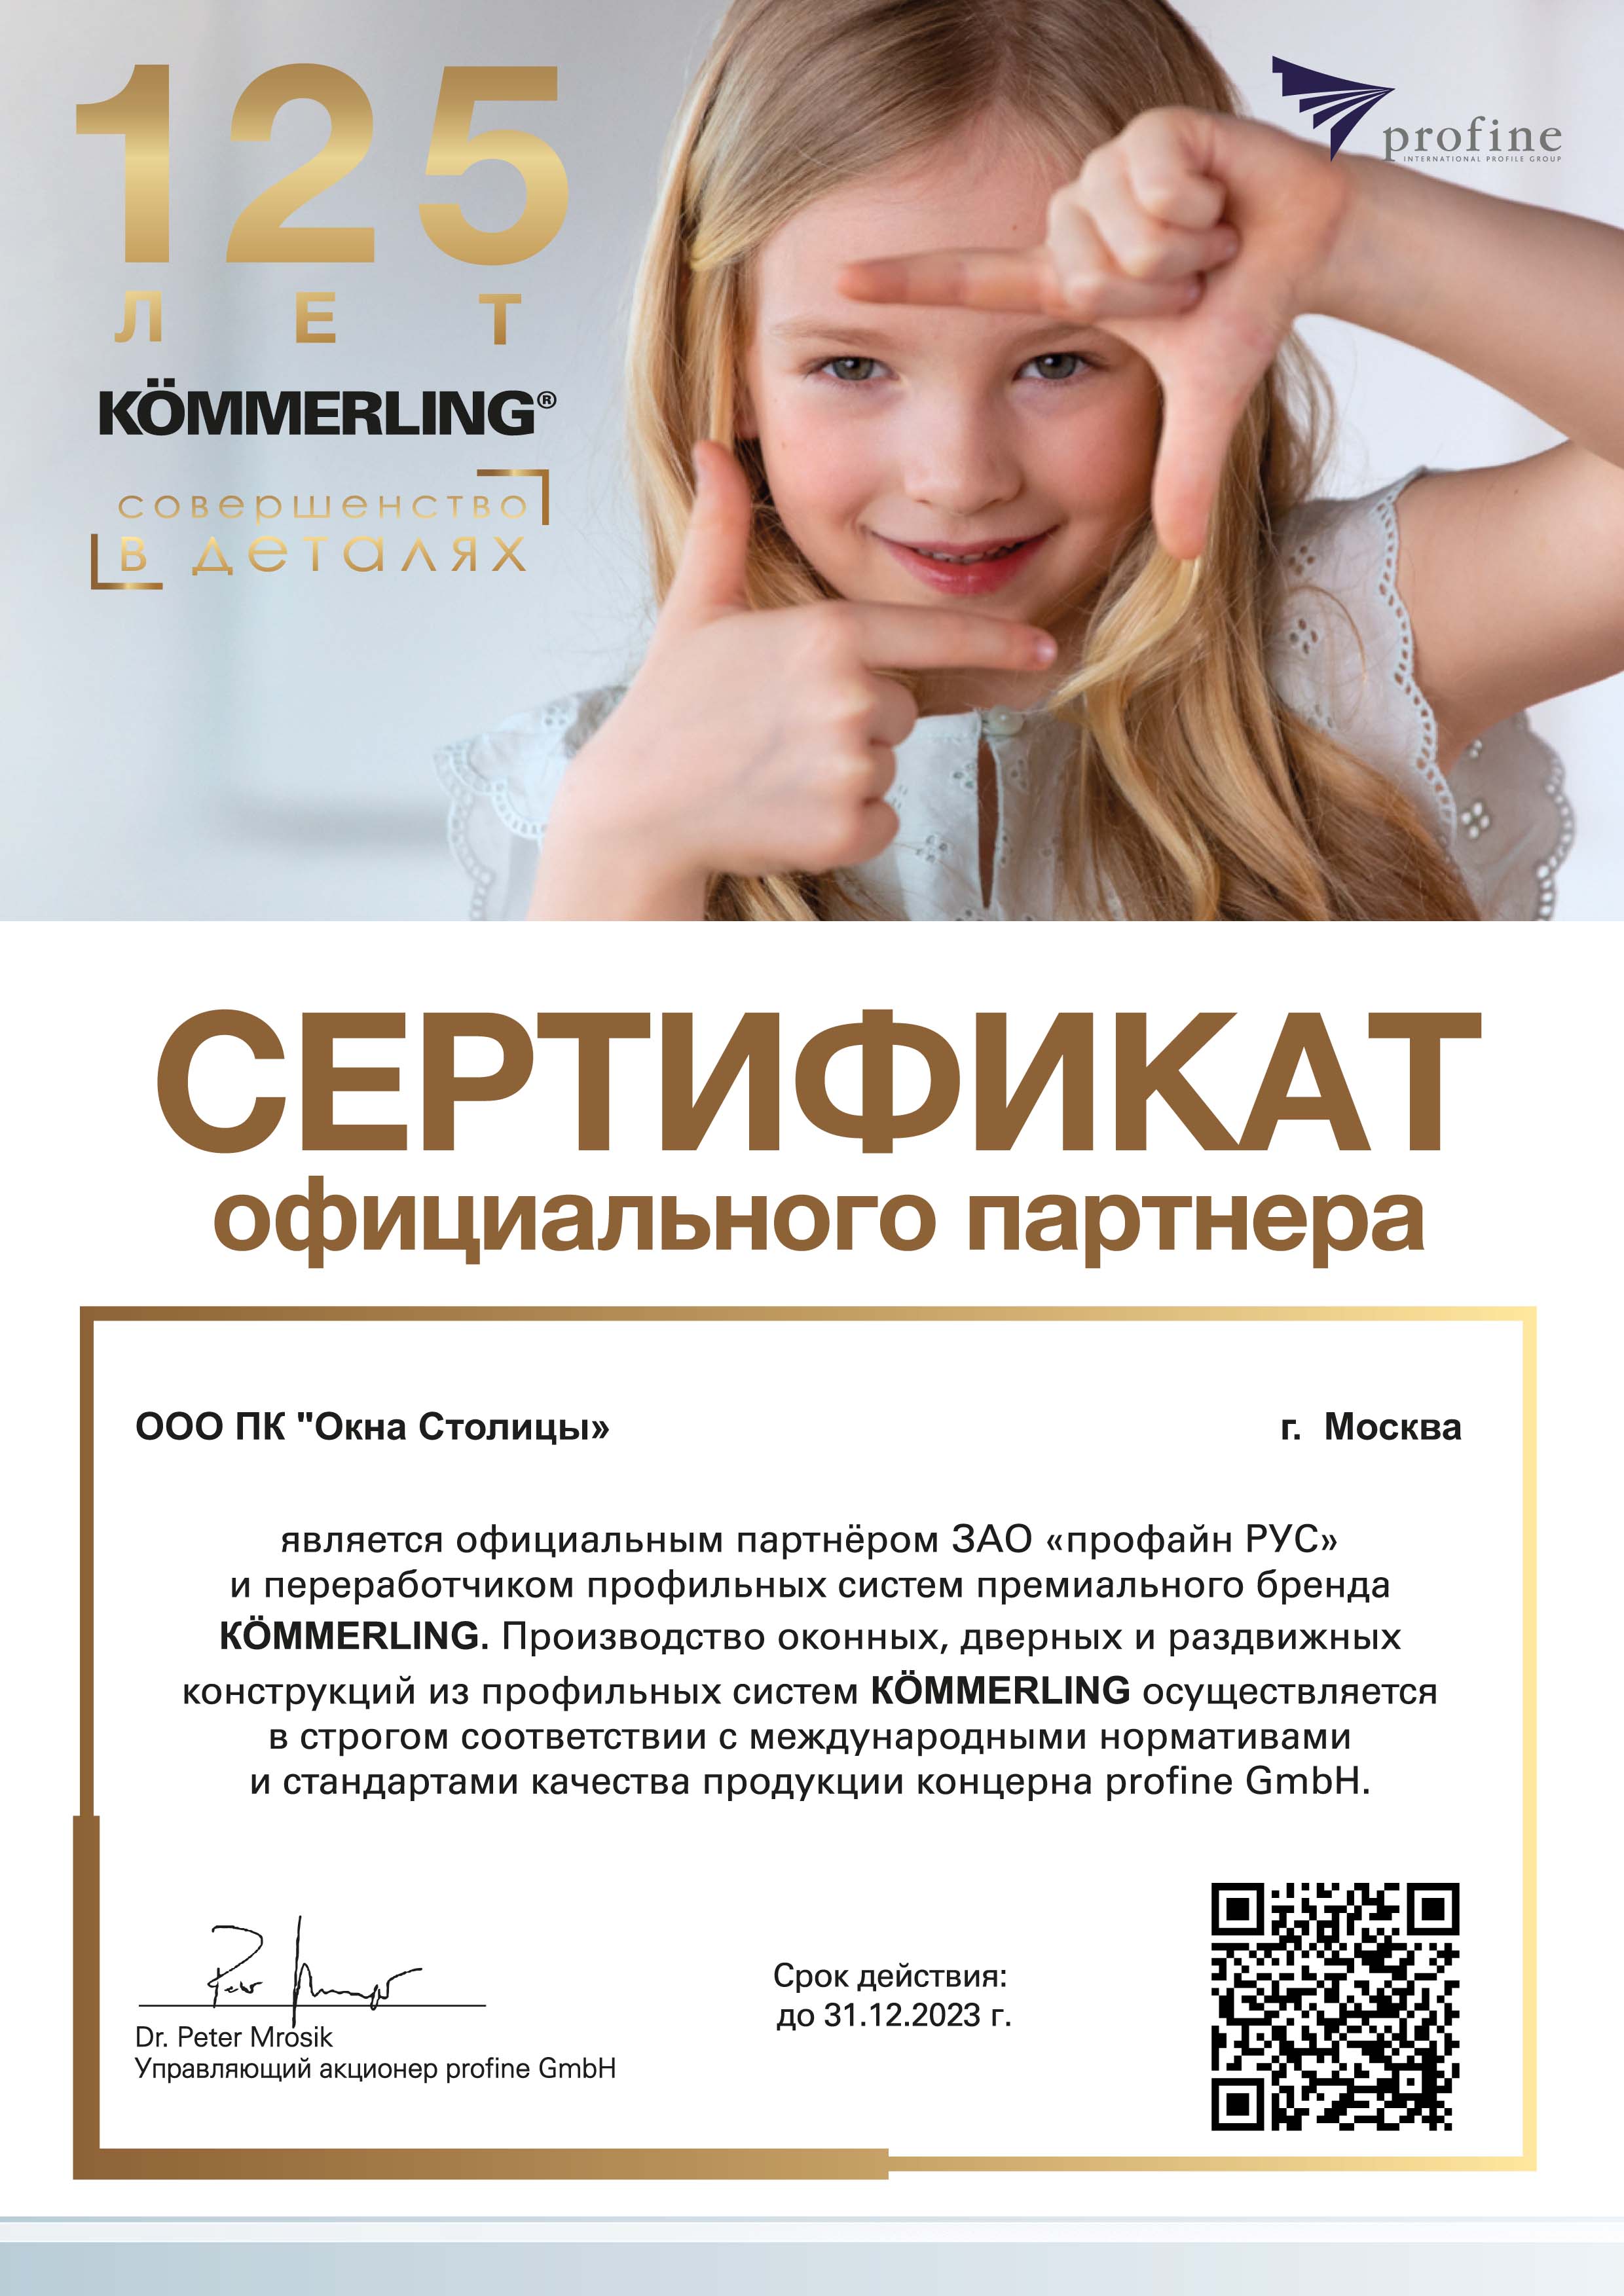 profine RUS (KÖMMERLING), сертификат официального партнера, 31.12.2023